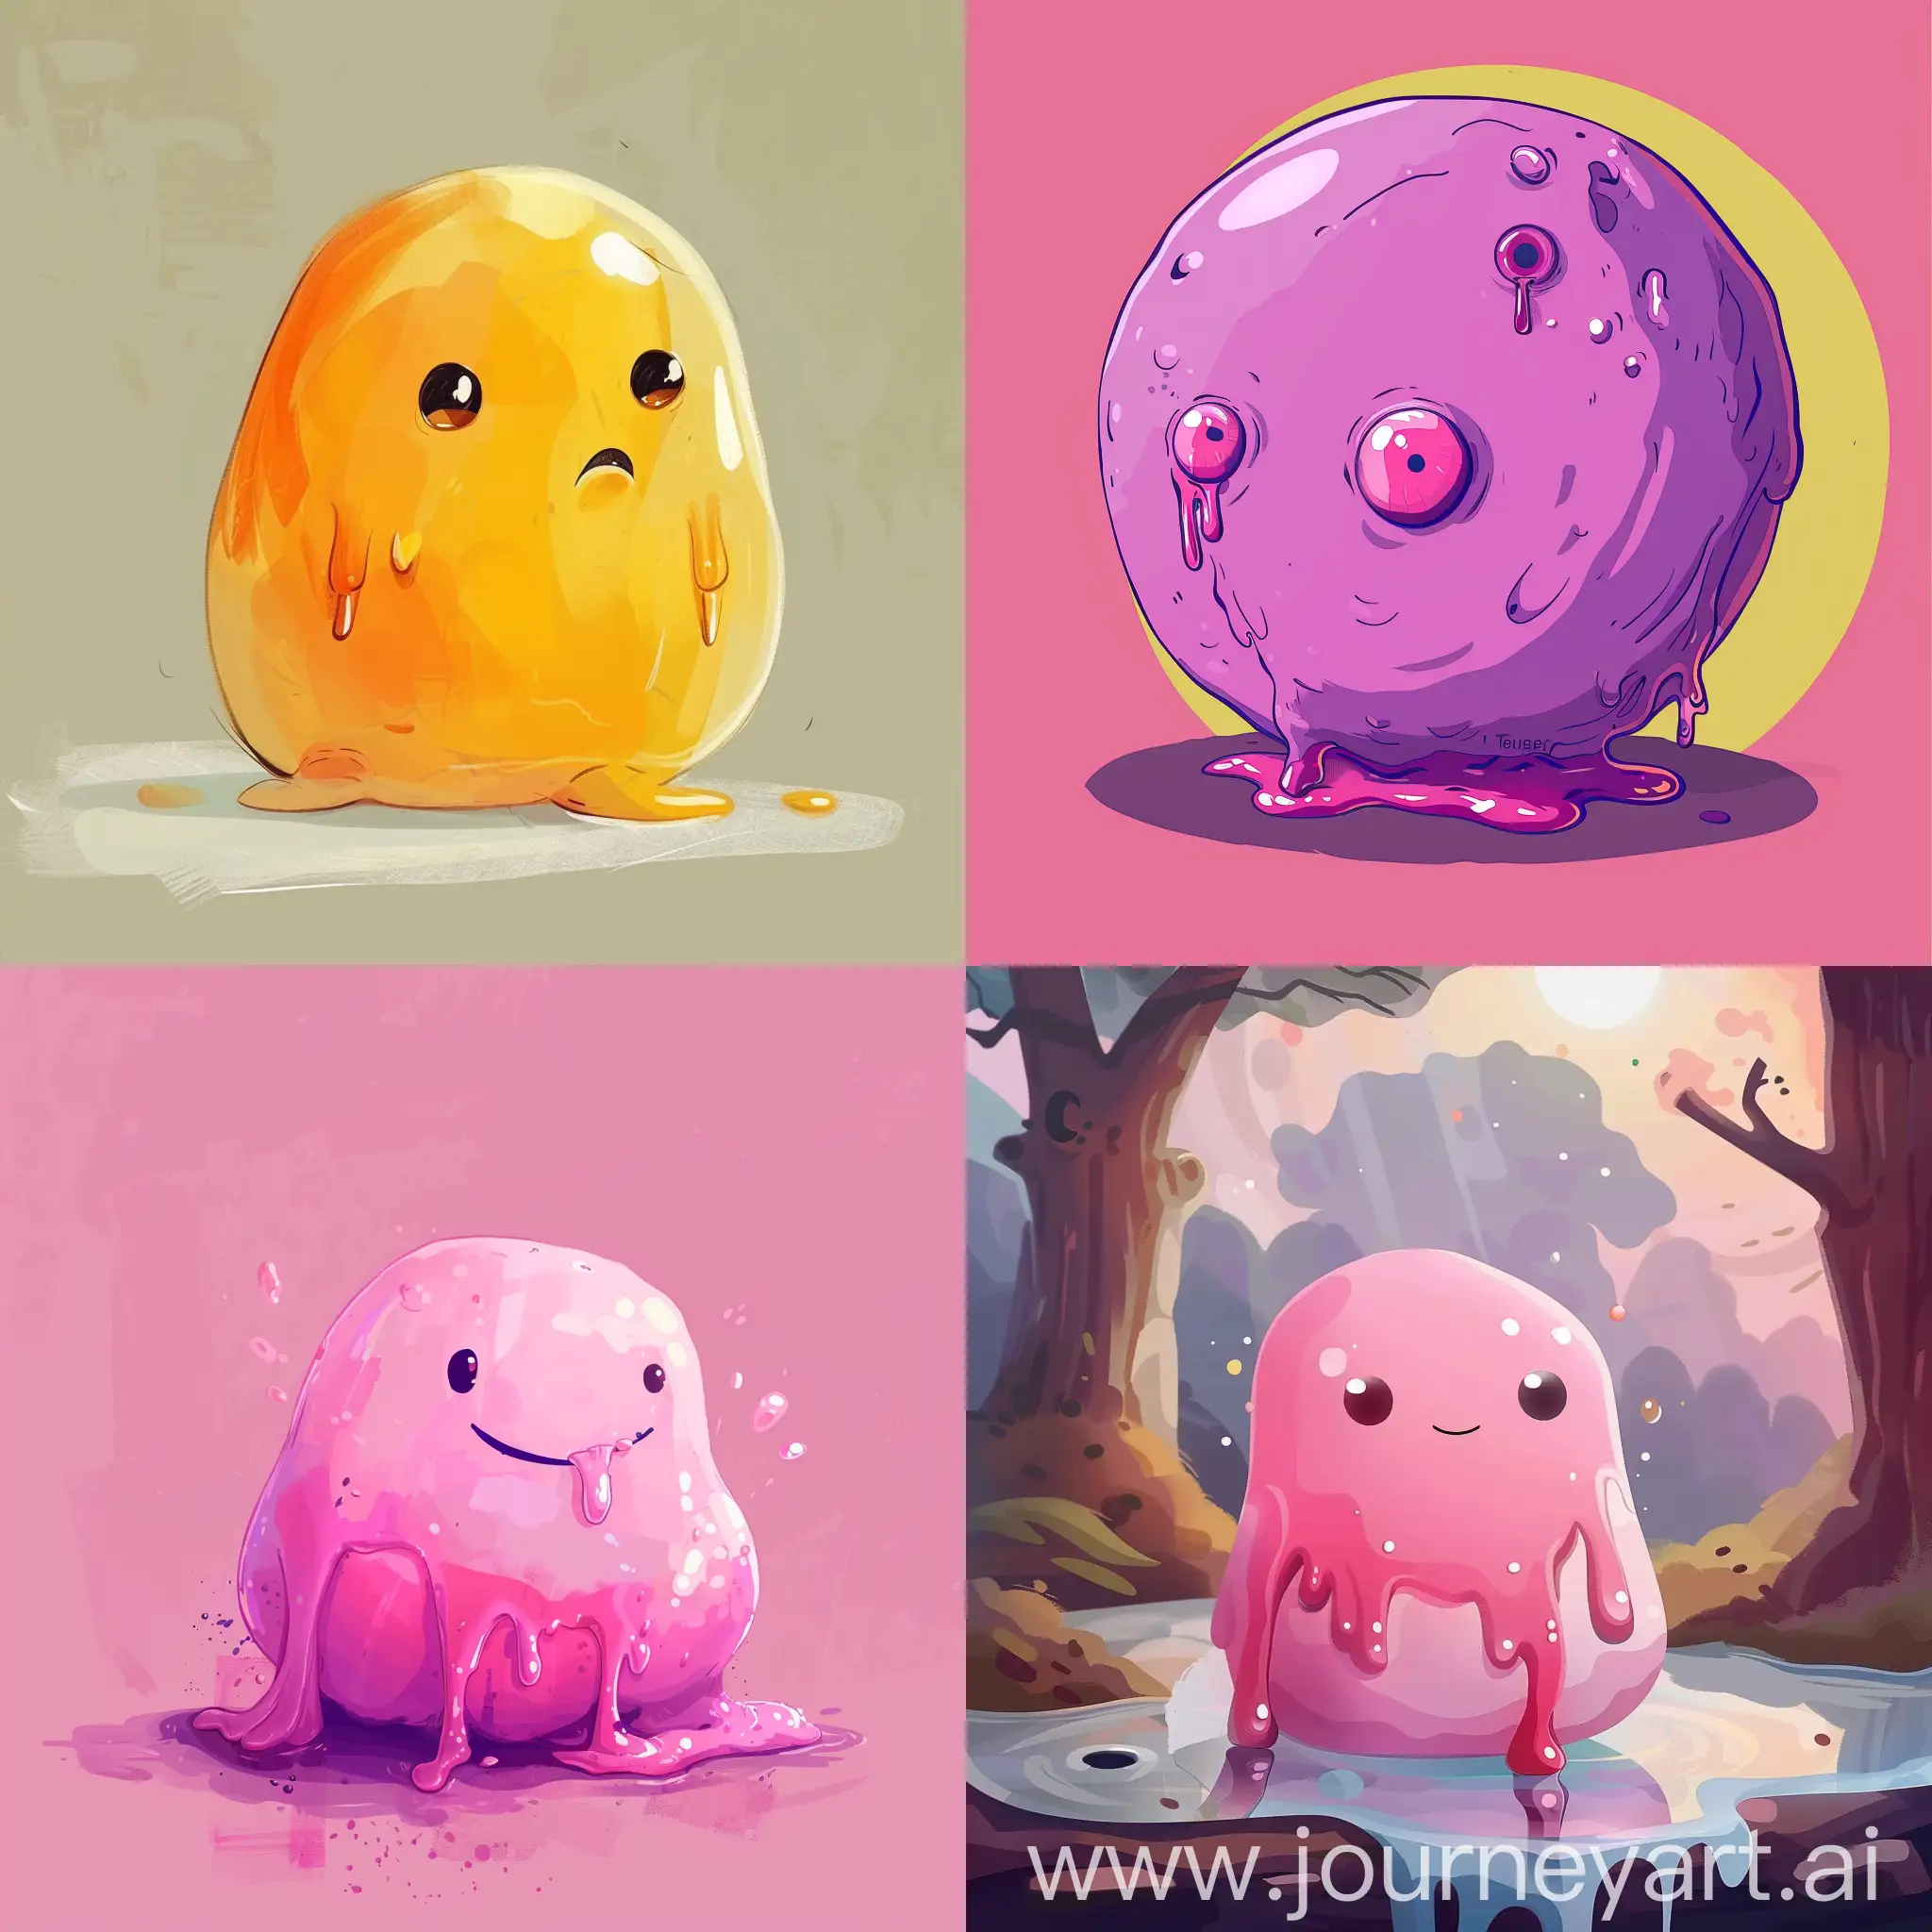 Cheerful-Cartoon-Blob-Character-Drawing